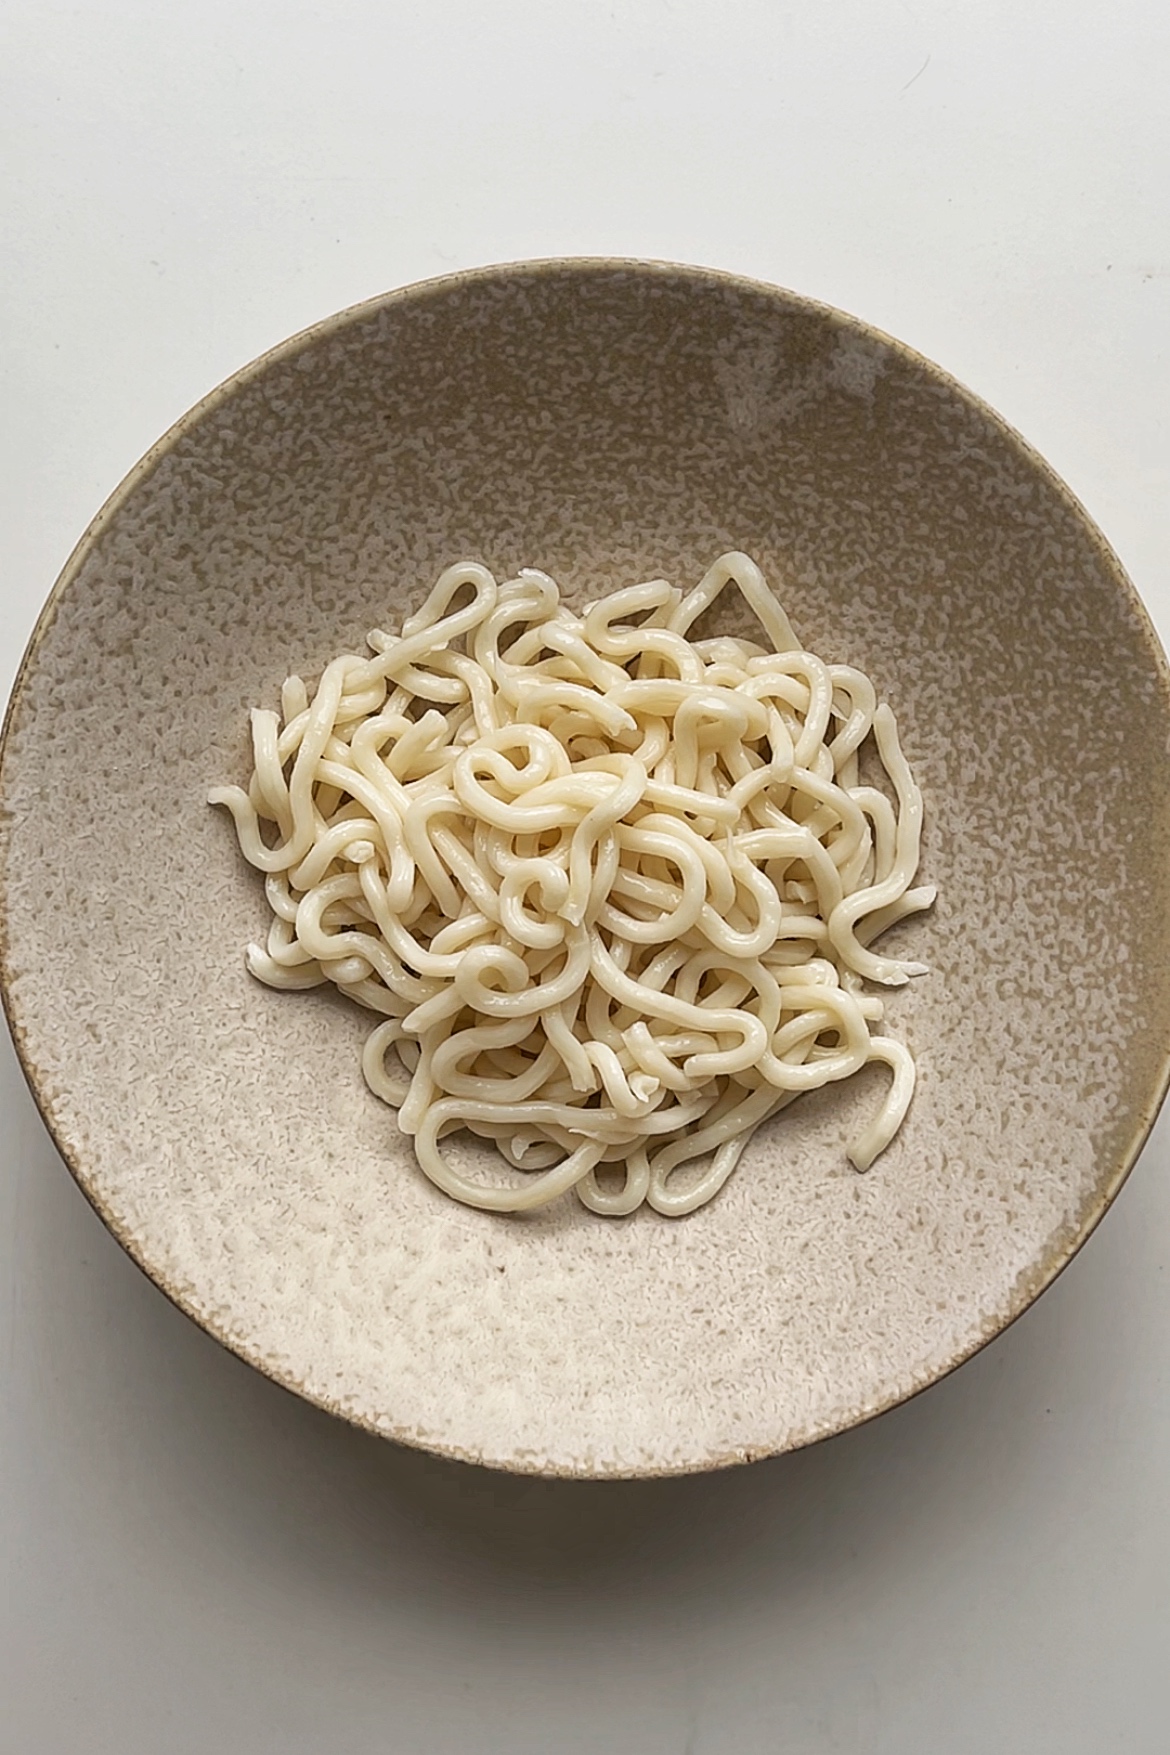 Udon noodles in bowl. 